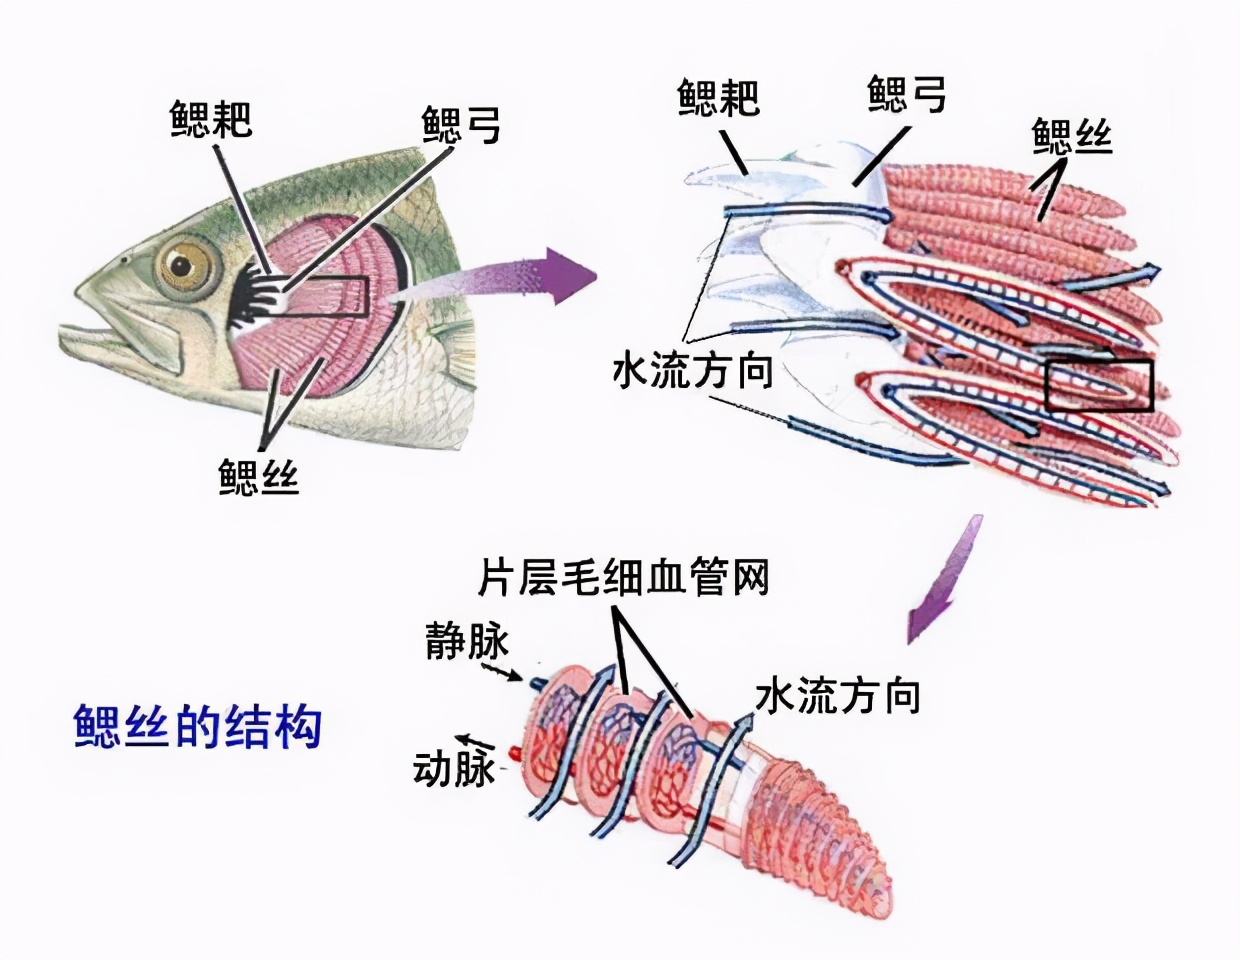 認識魚鰓及其呼吸特點：鰓是魚類最基本、最起碼、最重要的器官